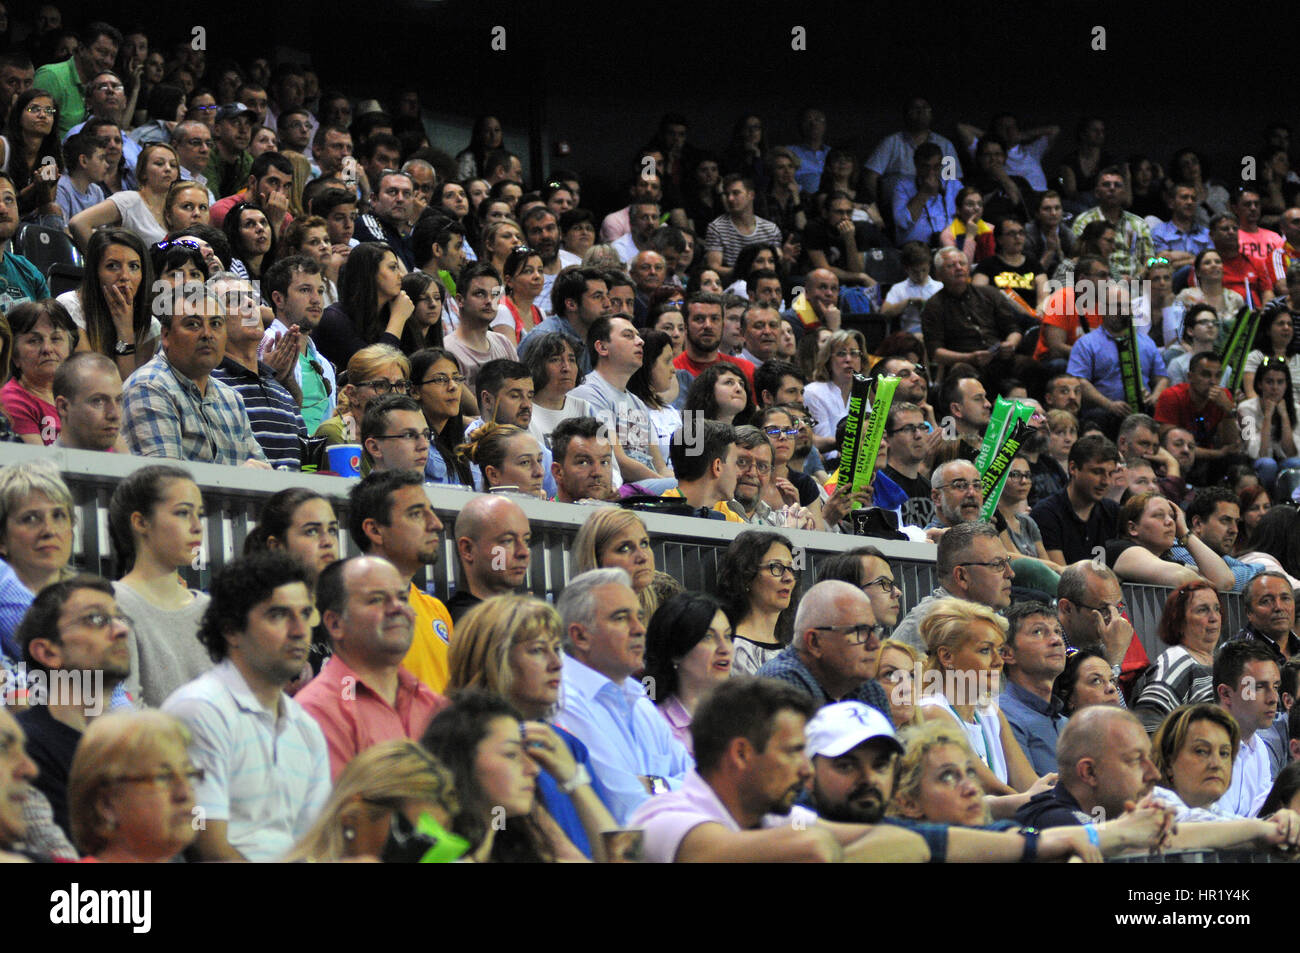 CLUJ-NAPOCA, RUMANIA - Abril 17, 2016: Multitud de personas apoyando a su jugador favorito durante un partido de tenis Fed Cup en la Copa del Mundo de Play-Offs, Roma Foto de stock